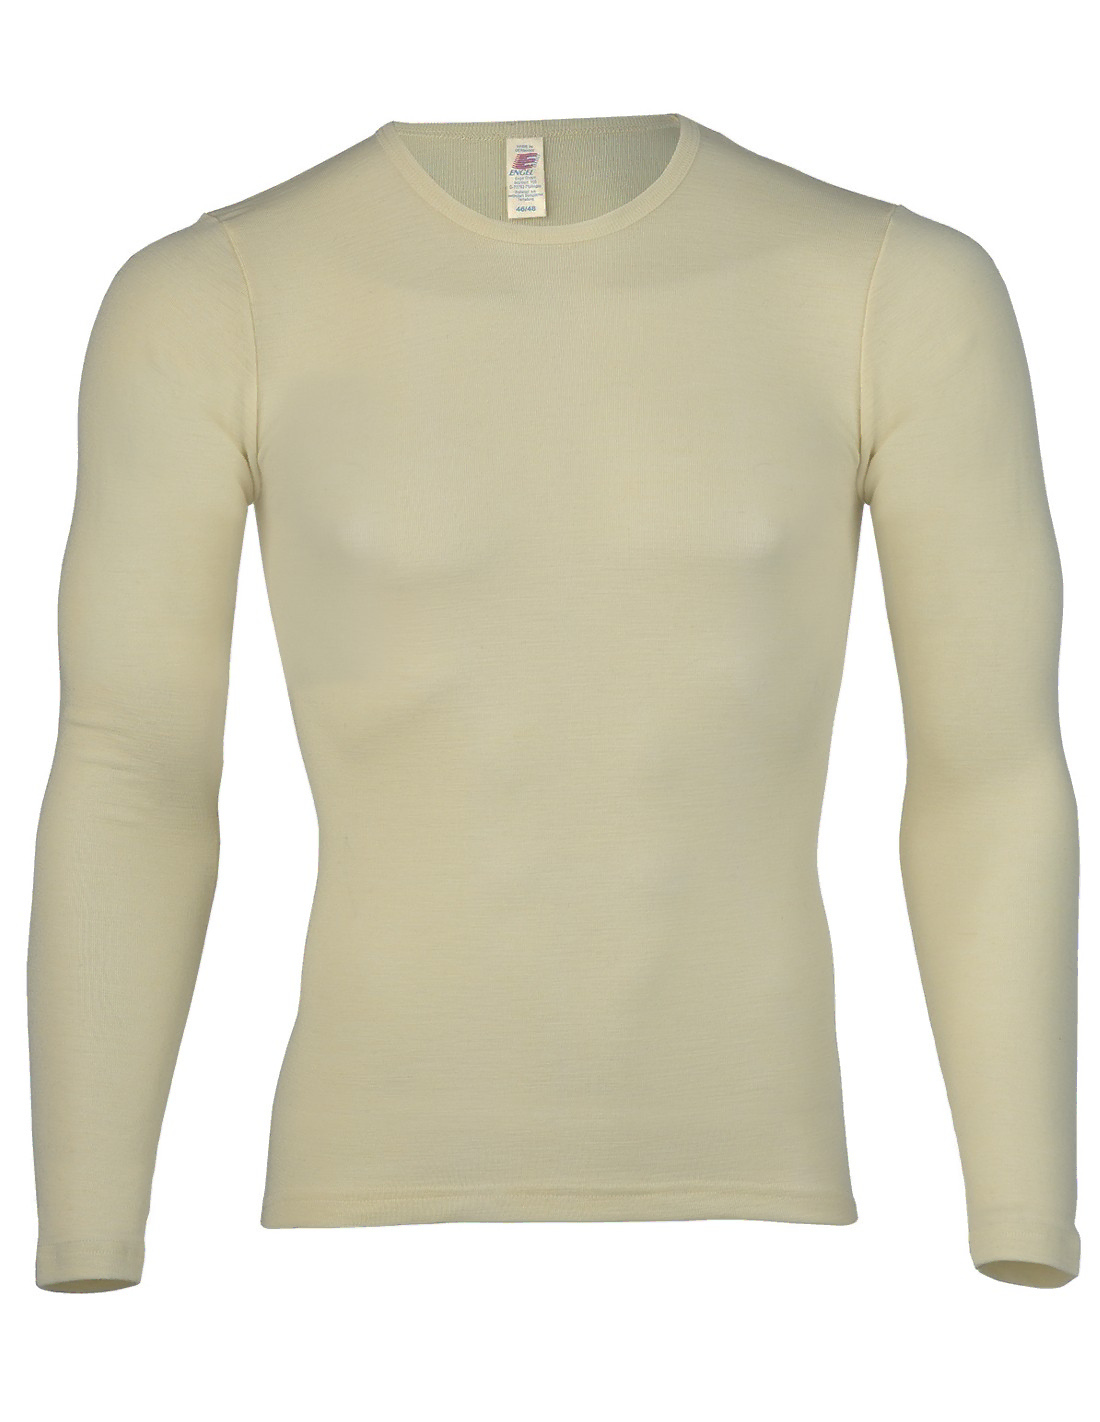 Image of Heren Shirt Lange Mouw Zijde Wol Engel Natur, Kleur Gebroken wit, Maat 54/56 - Extra Large